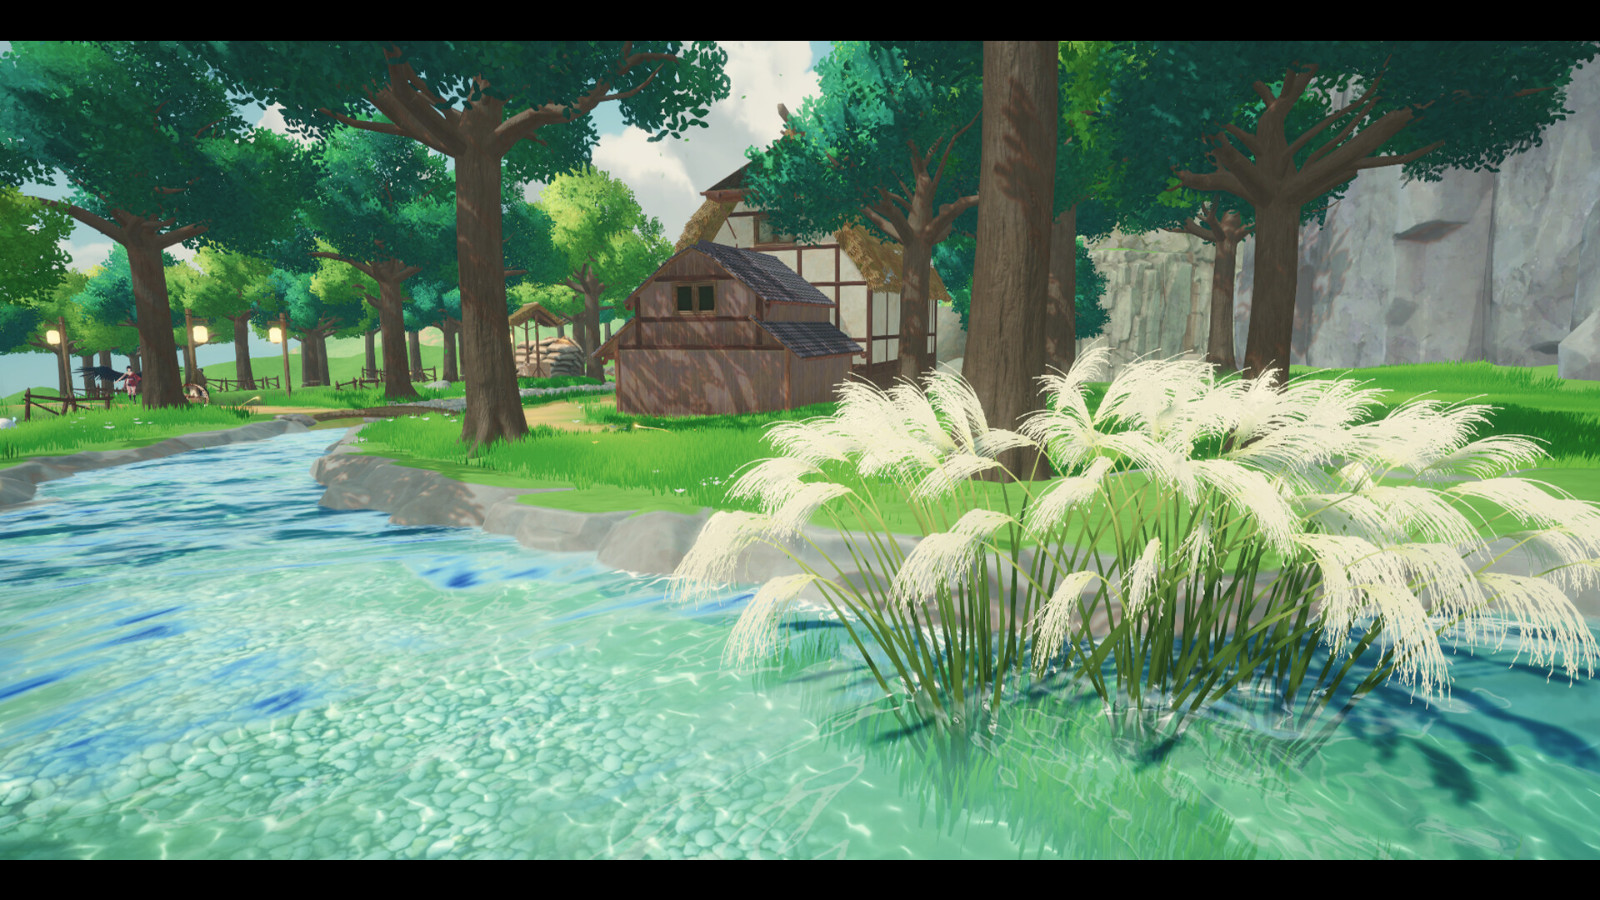 东方奇幻风格的农场模拟冒险游戏《青丘物语》Steam页面上线 发售日期待定 二次世界 第3张